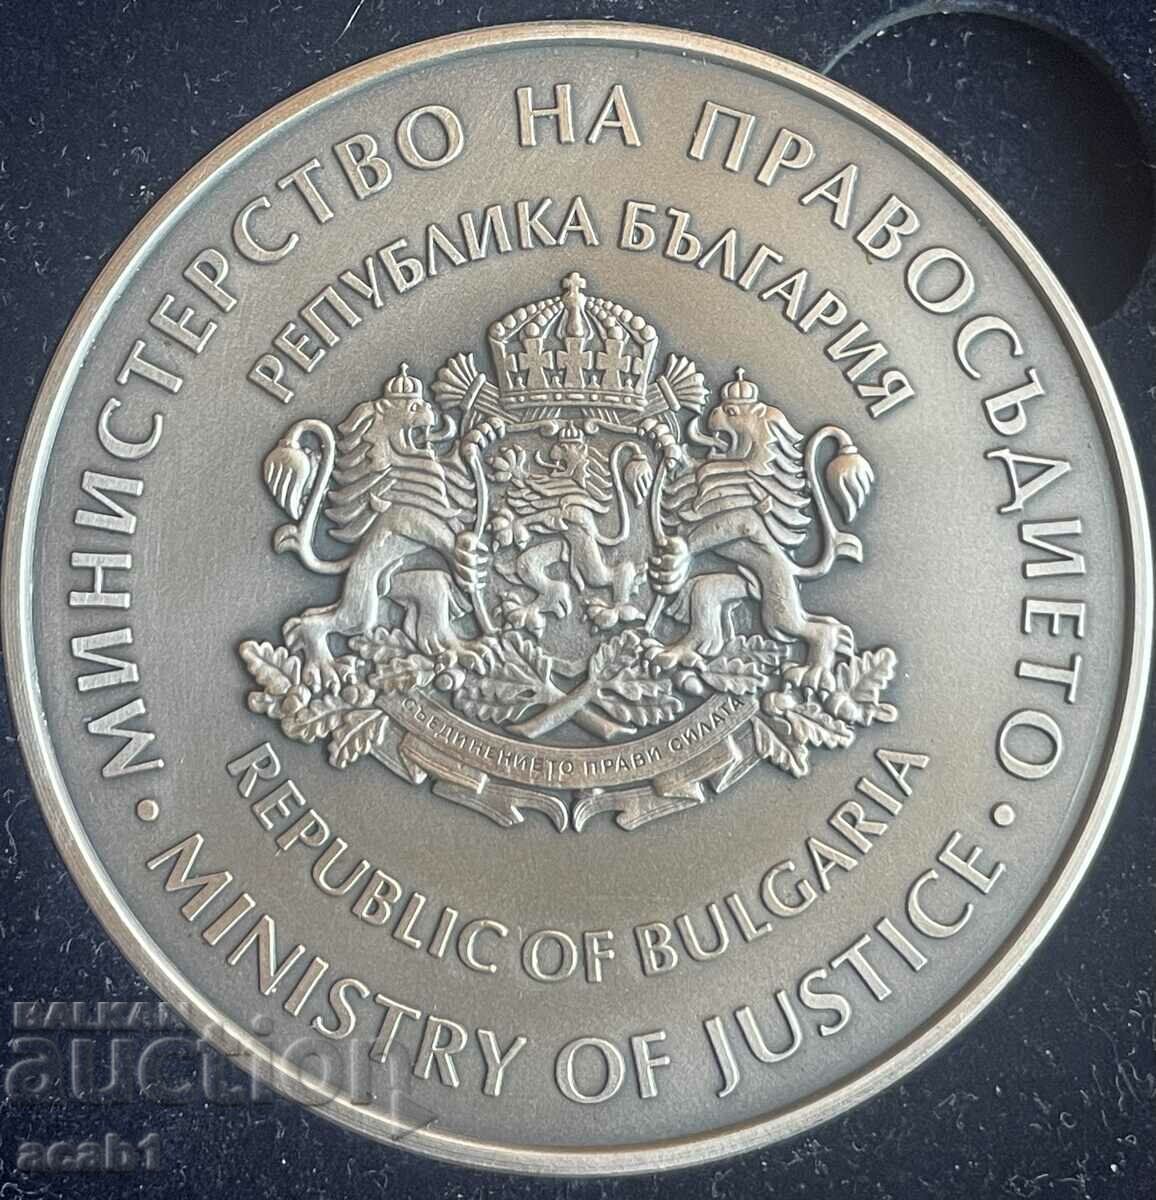 Placa Ministerului Justitiei